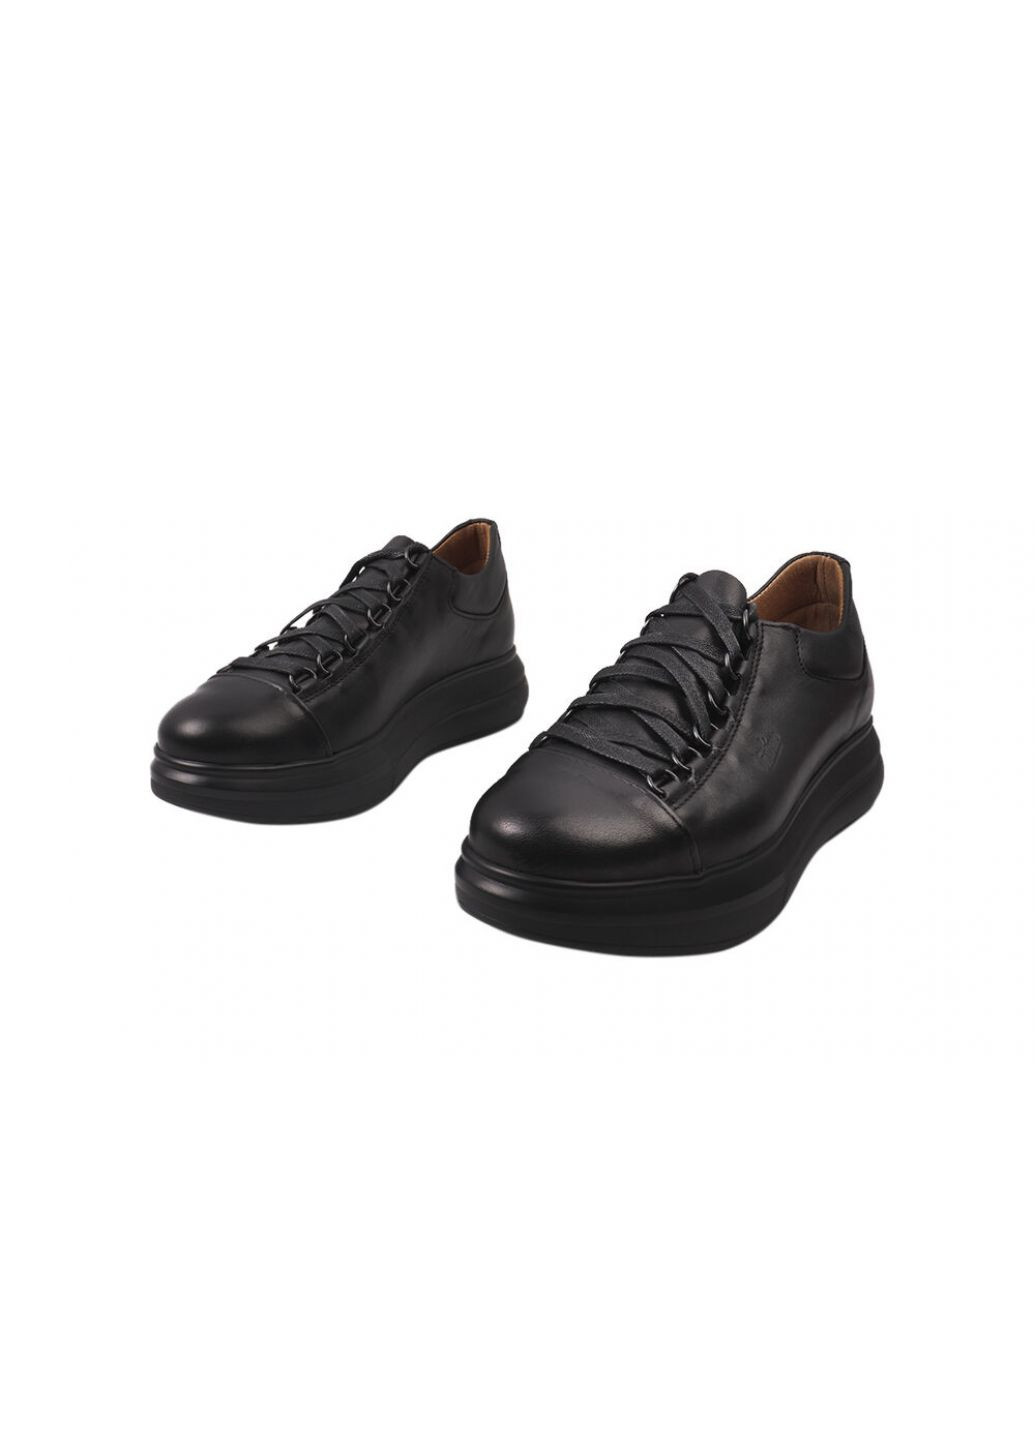 Черные кеды женские из натуральной кожи, на низком ходу, на шнуровке, цвет черный, украина Vadrus 320-21/22DTC